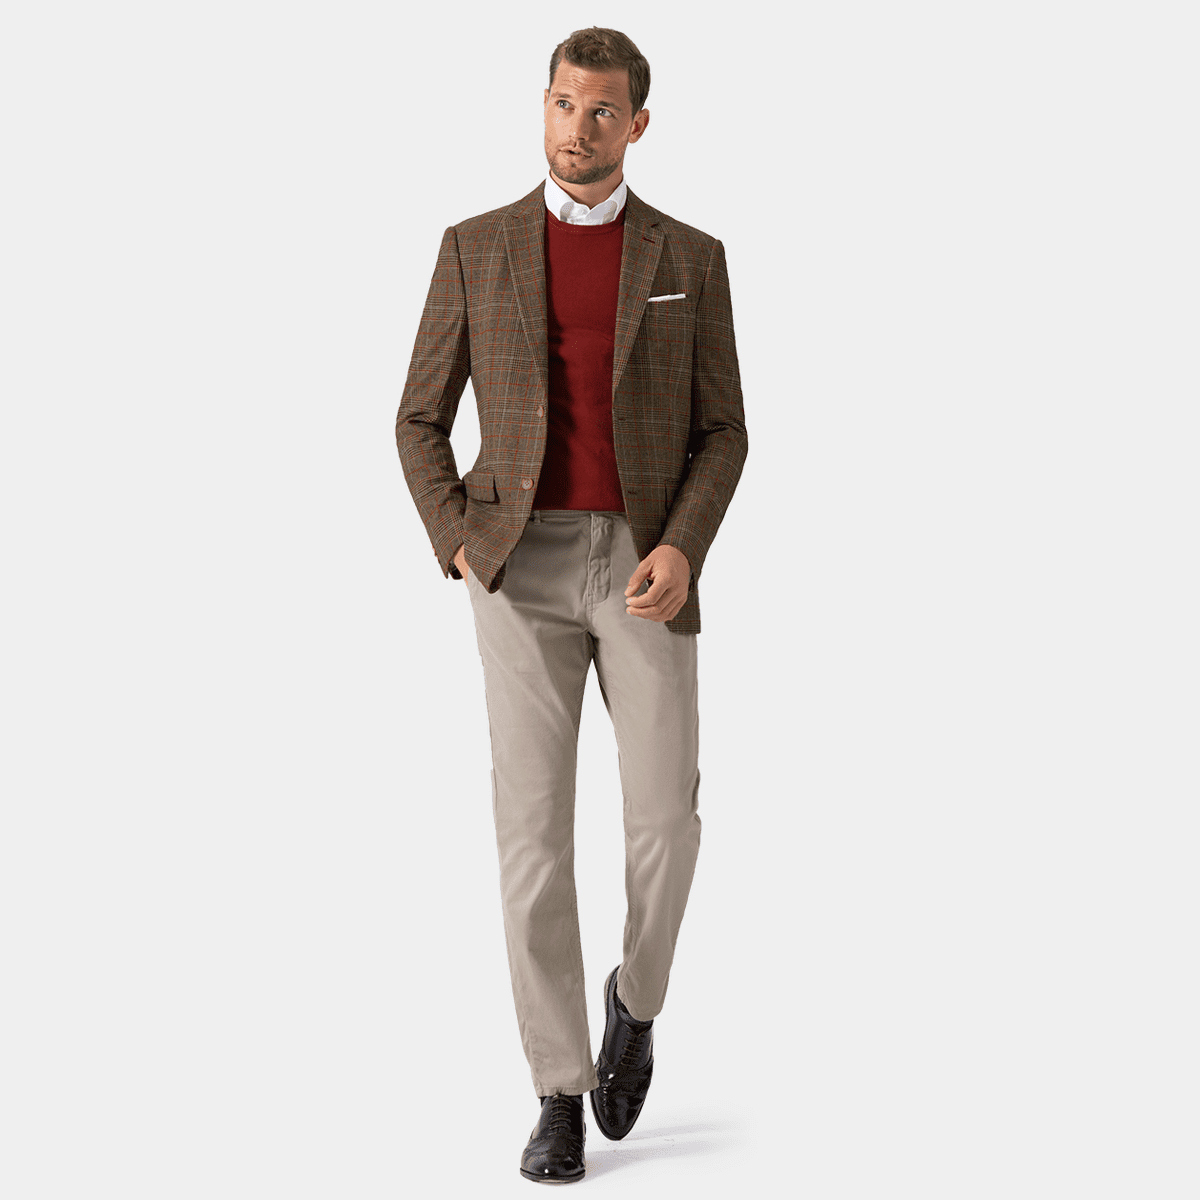 Men's Tweed Jackets | High Quality Tweed fabrics - Hockerty